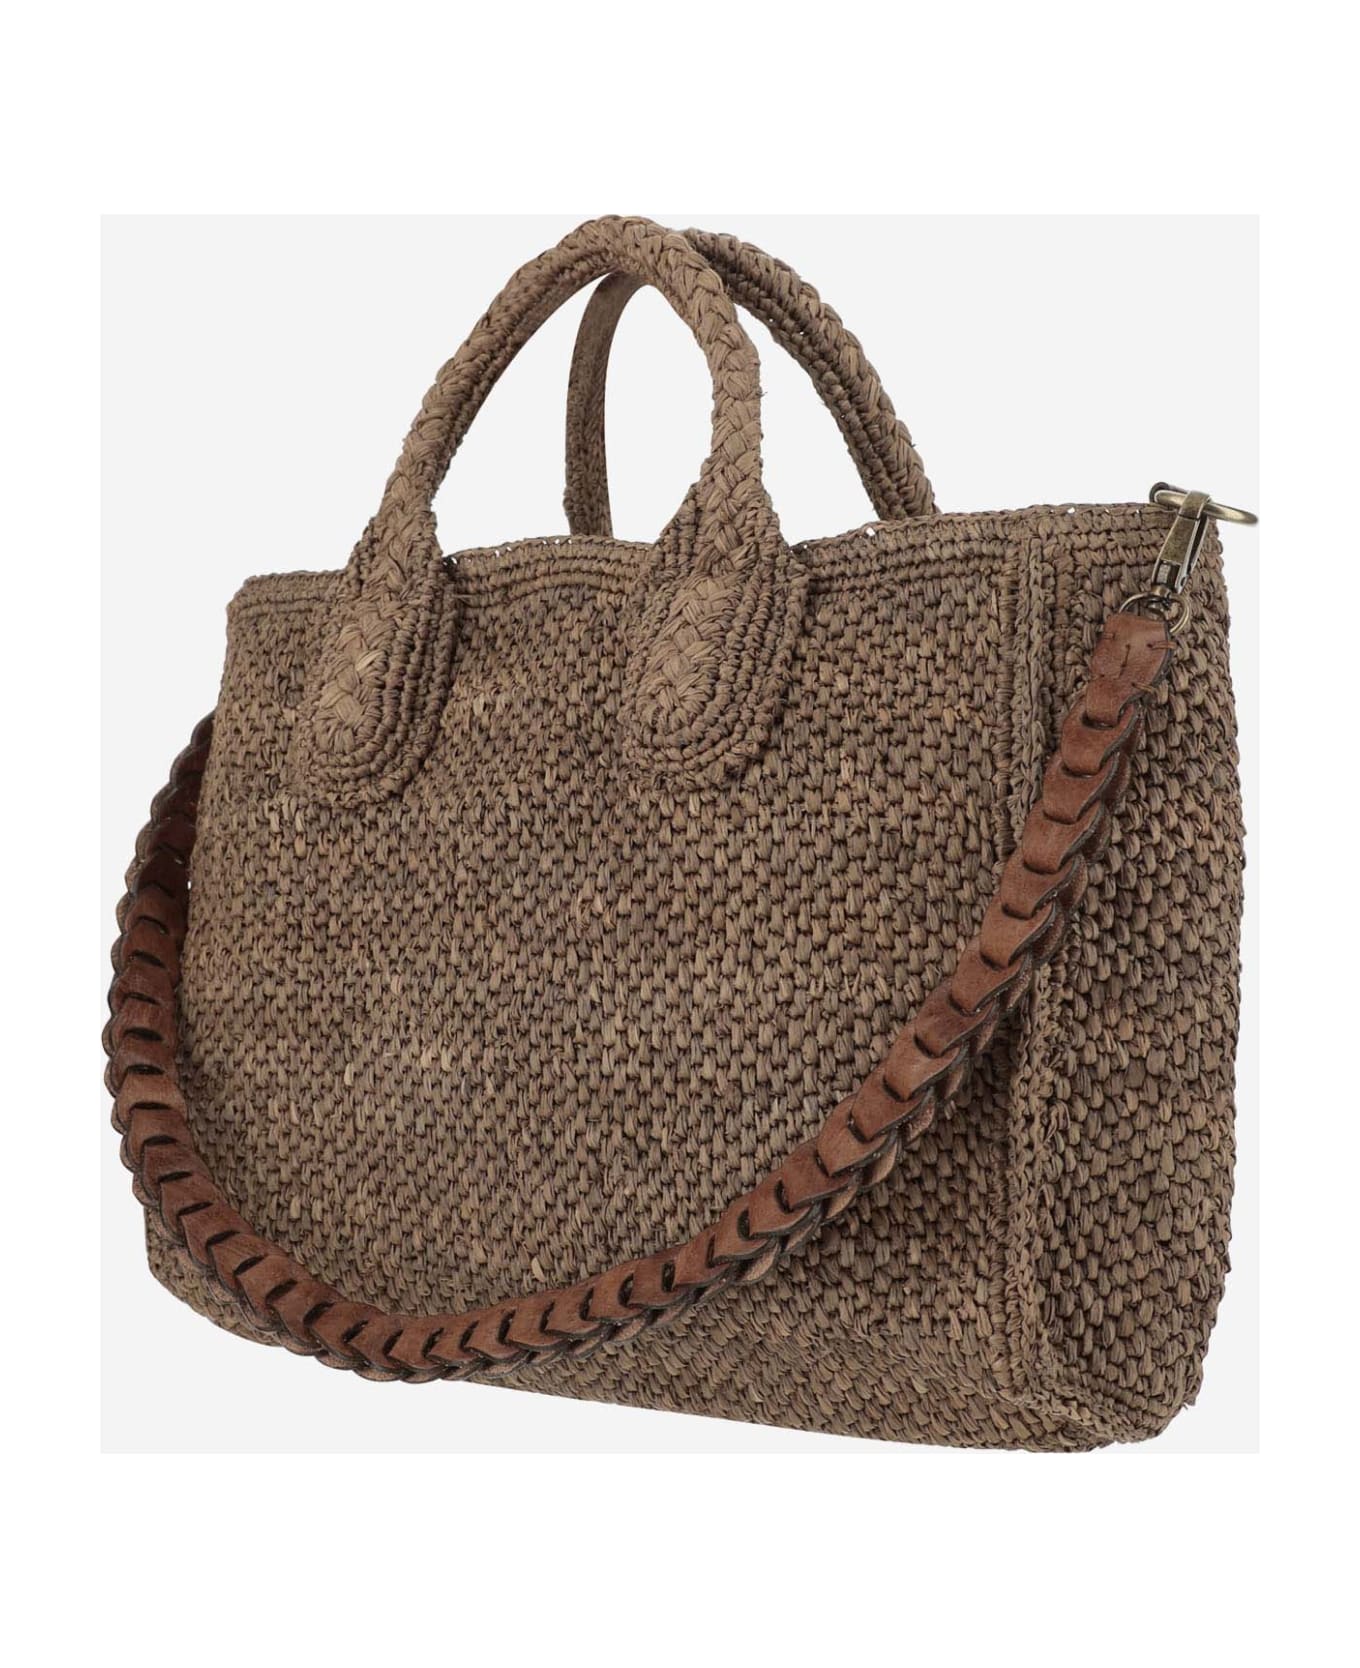 Ibeliv Raffia Bag With Leather Details - Dark tea